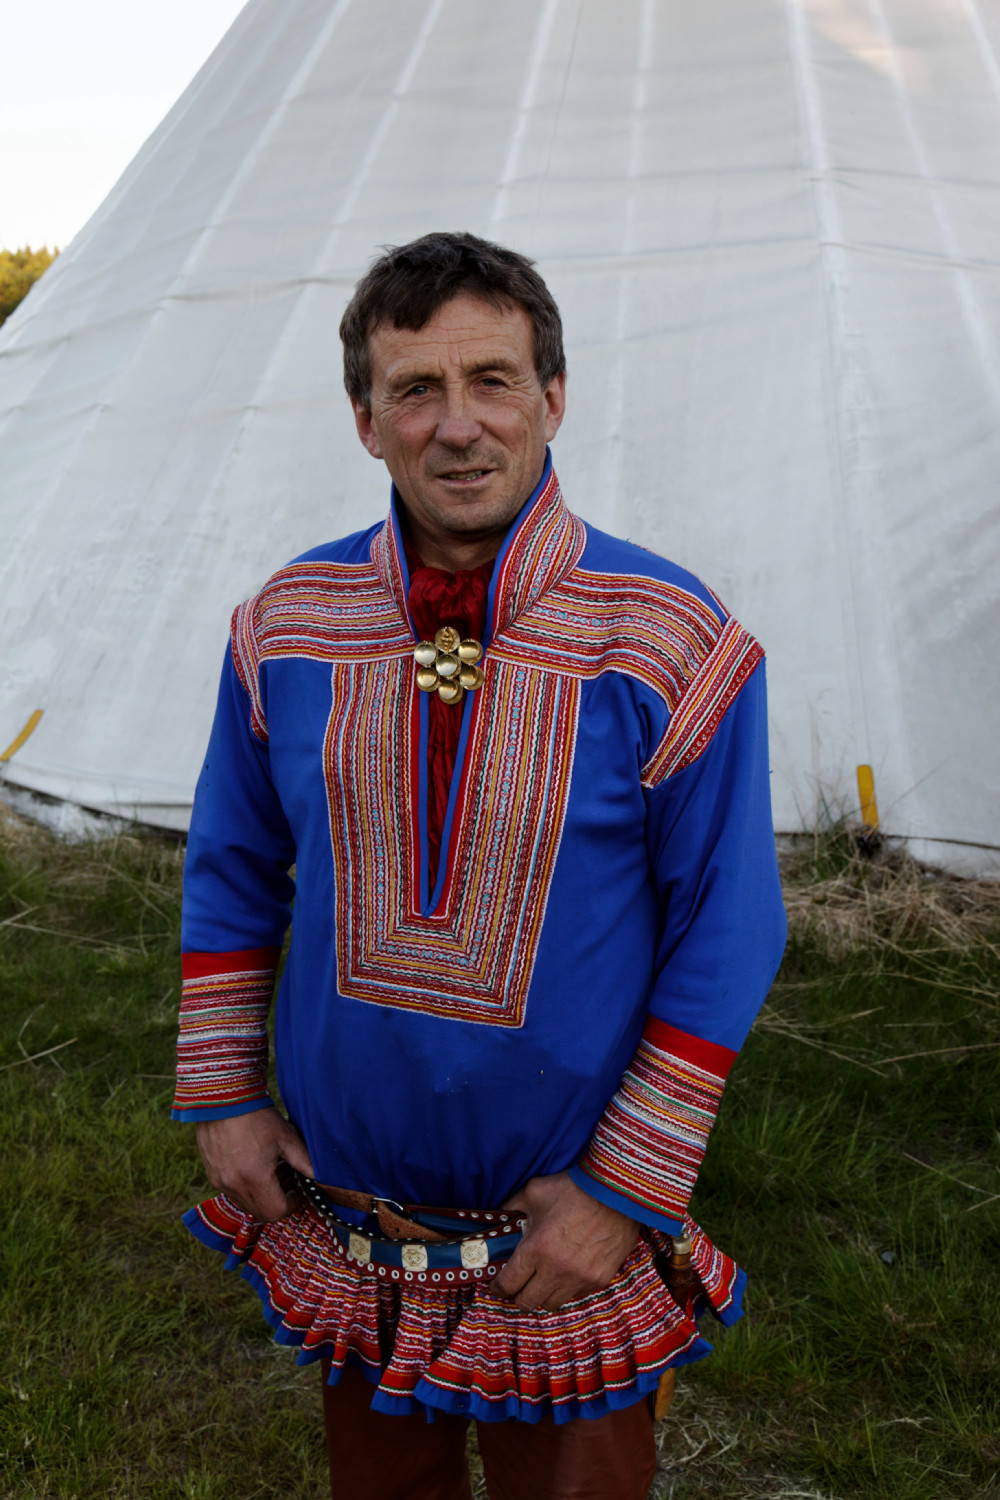 Παραδοσιακή φορεσιά των Sami